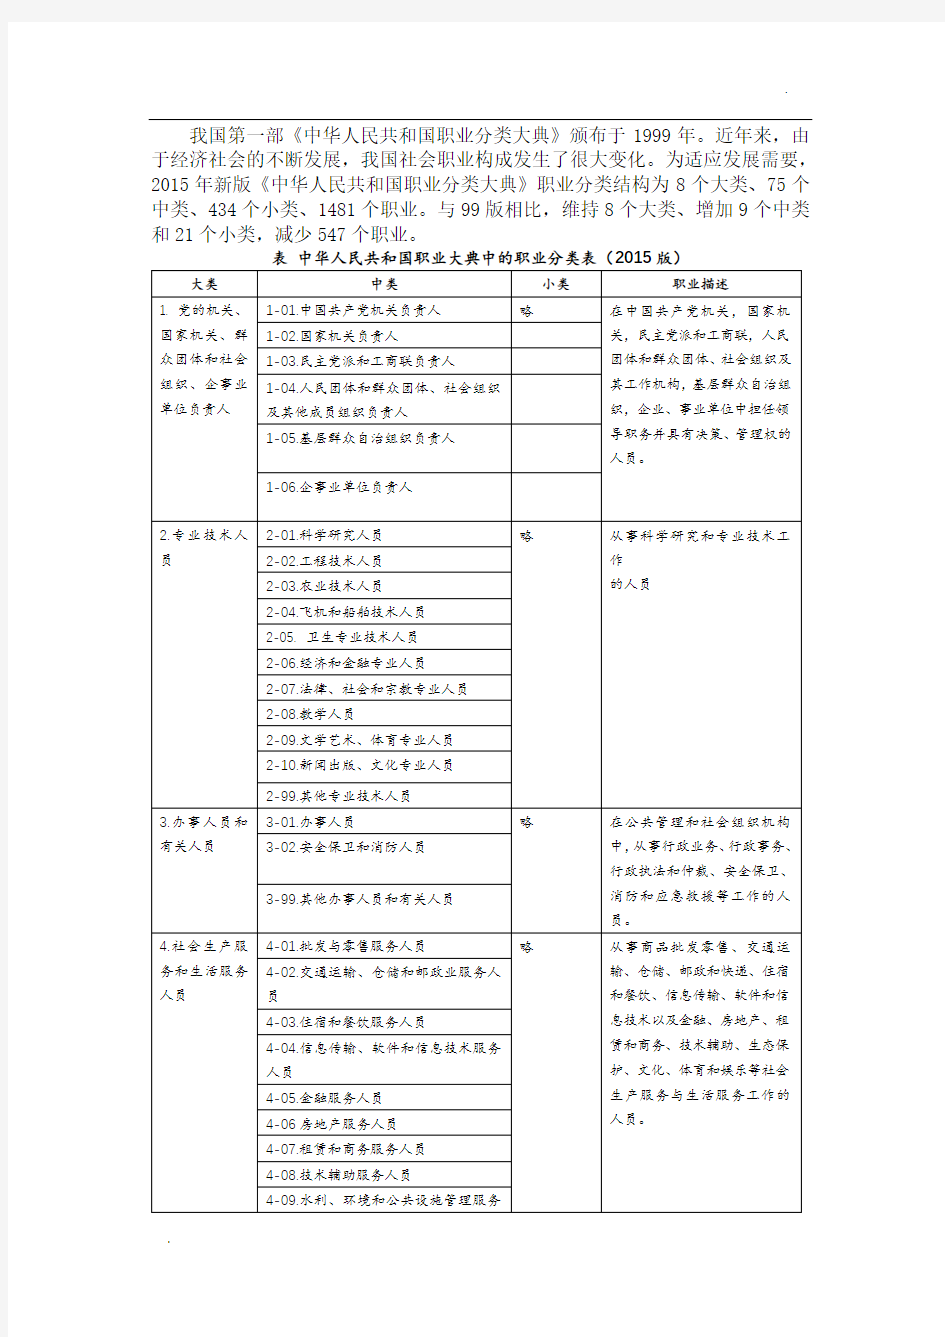 2015年新版《中华人民共和国职业分类大典》-2015年职业分类